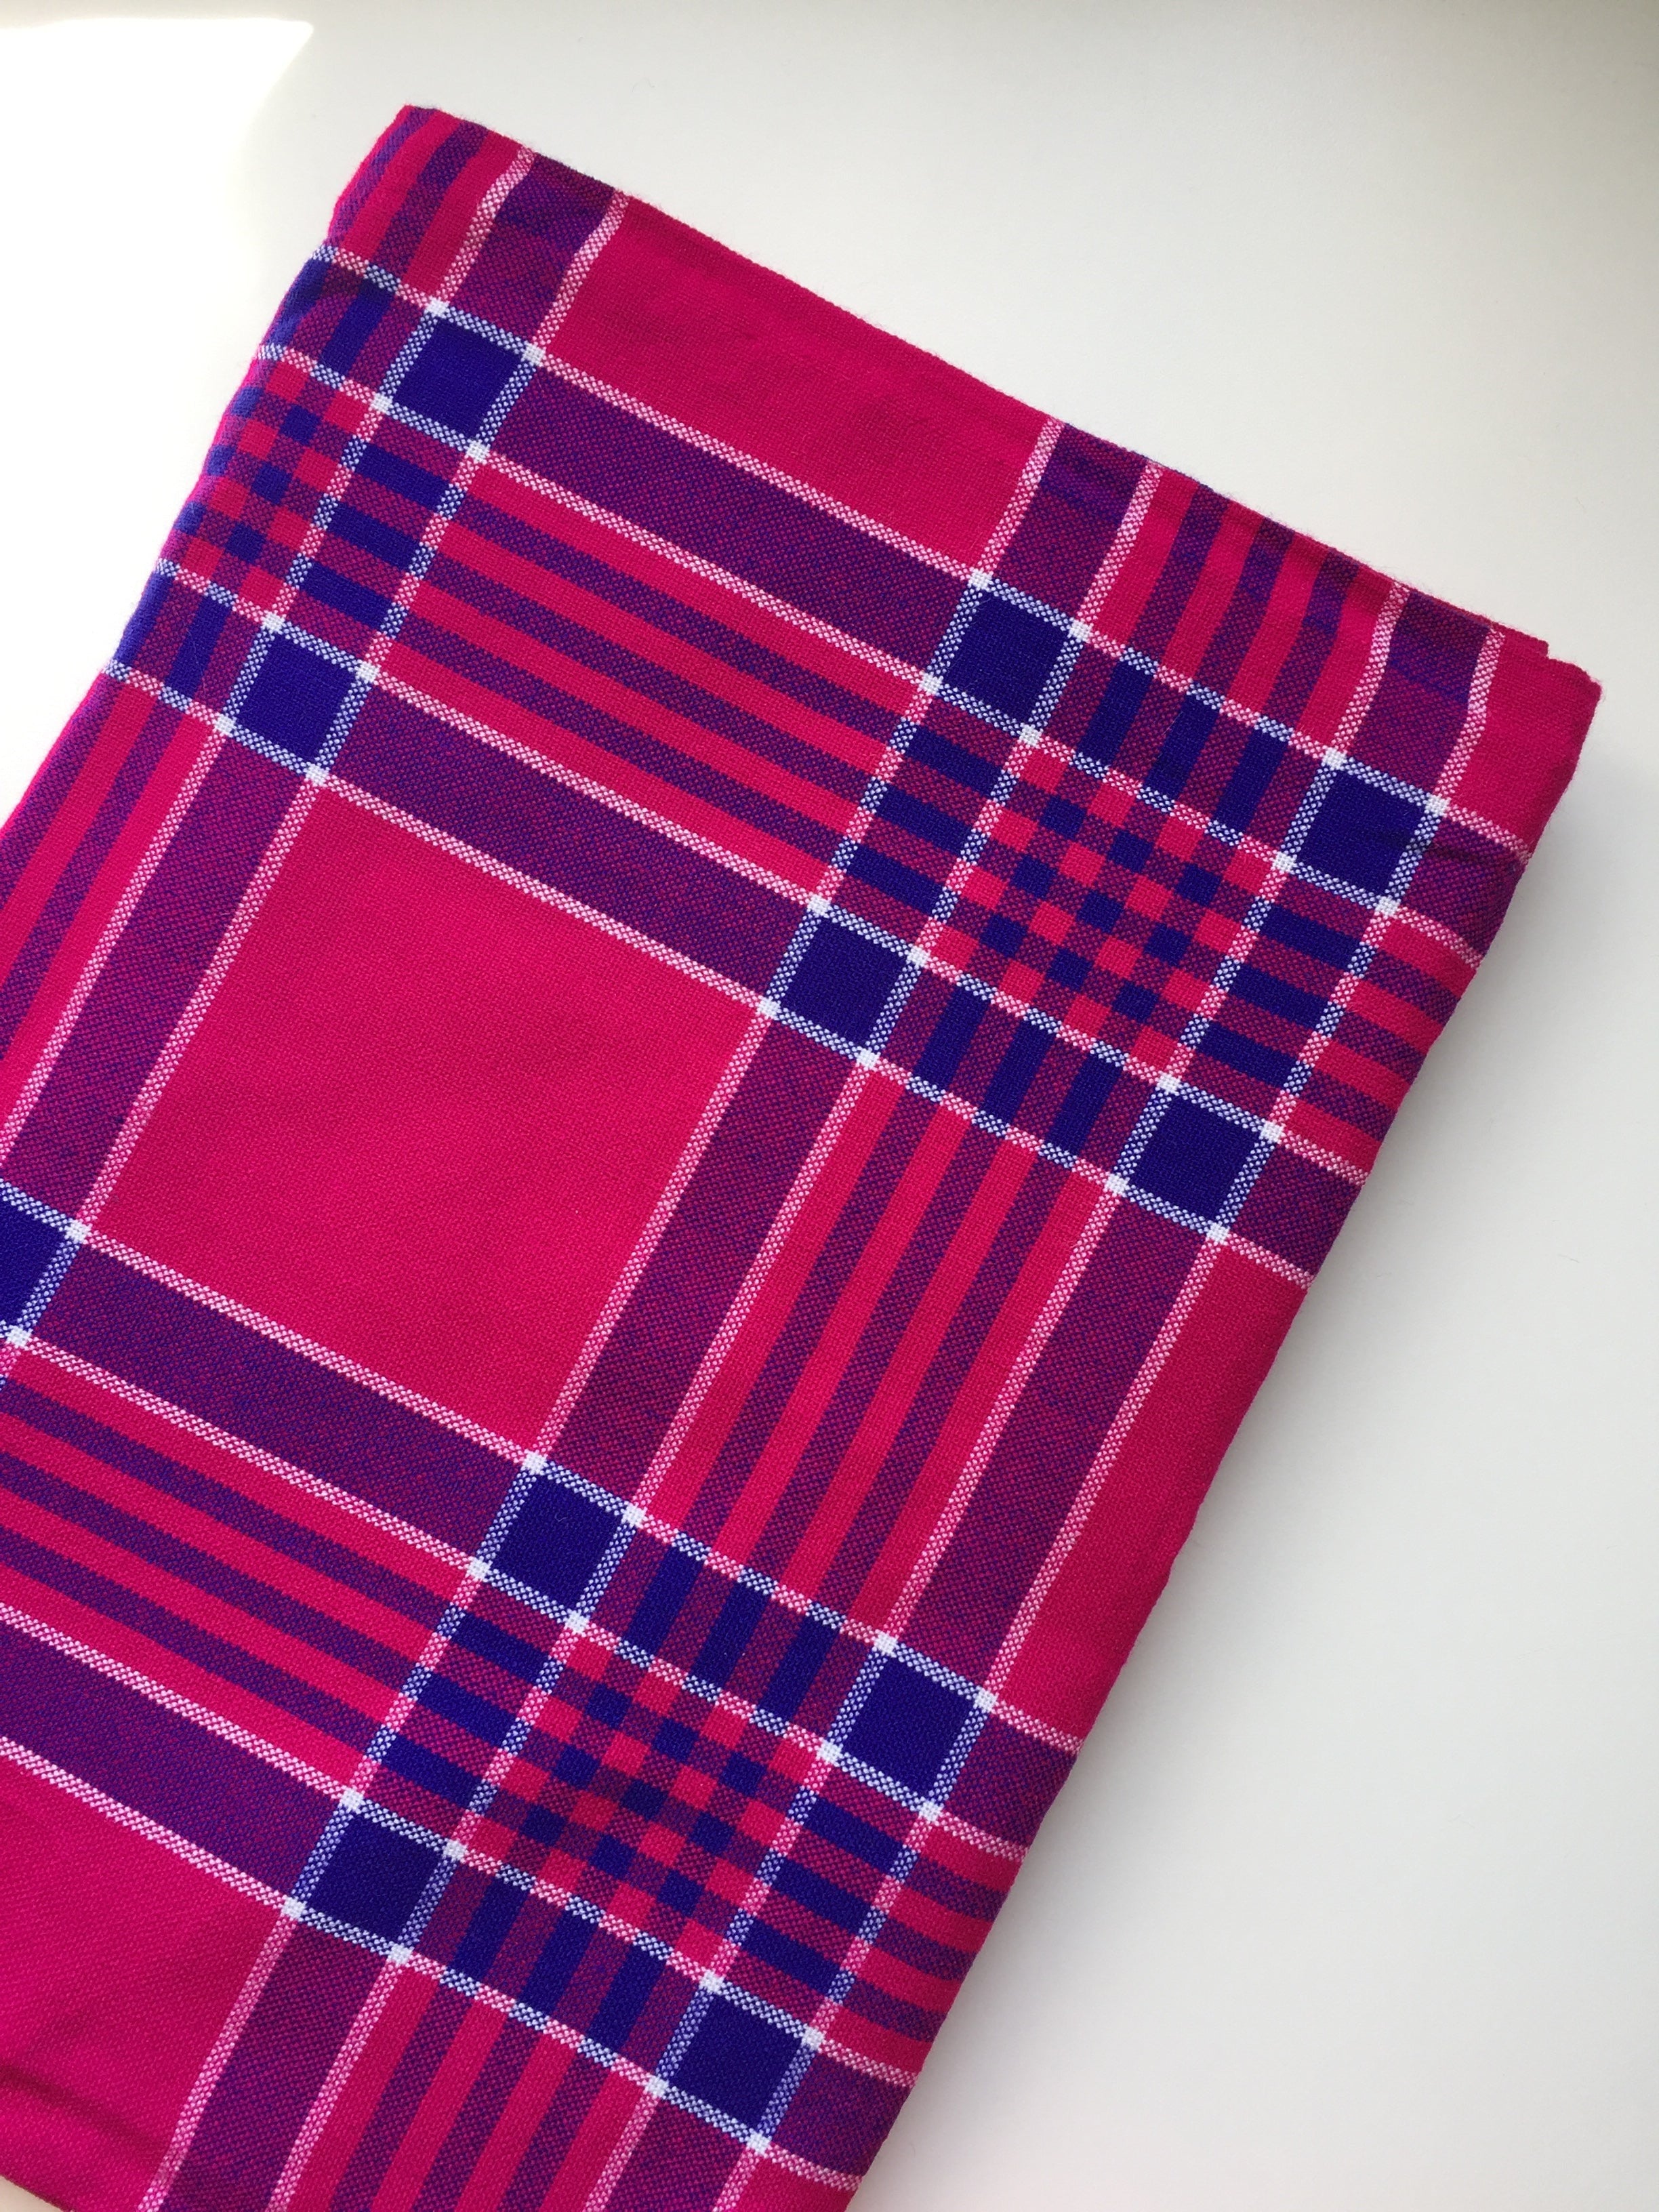 Original Kenyan African Maasai Shuka wrap throw blanket 60 X 80 New in  package